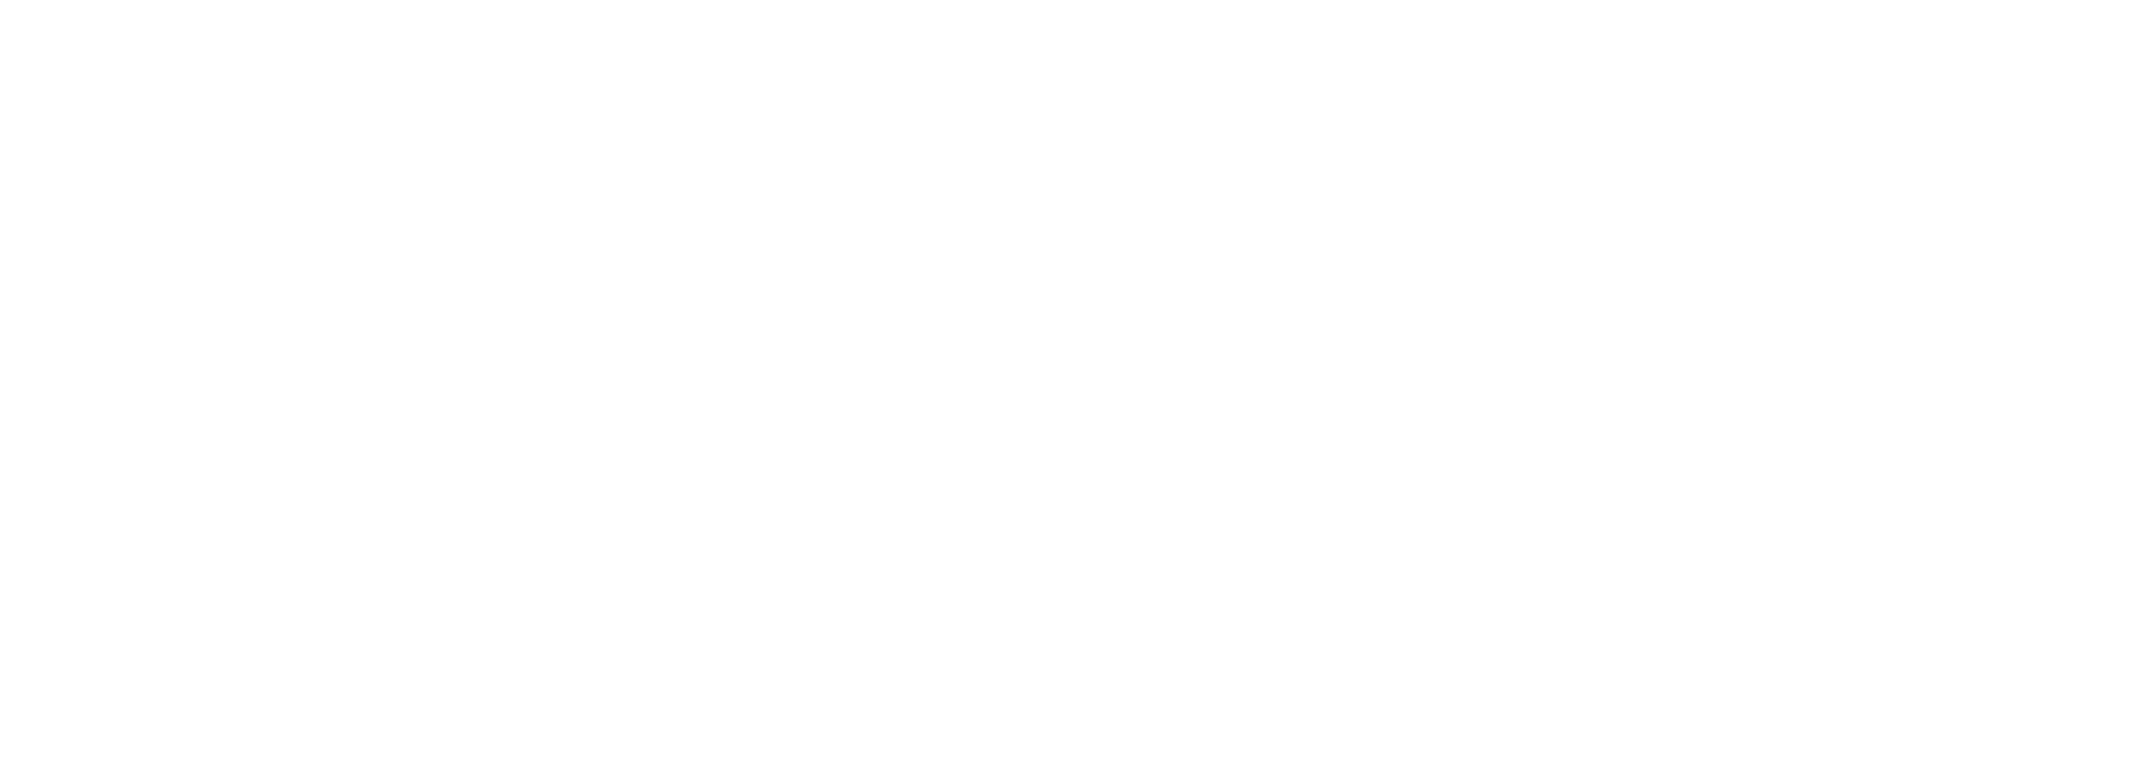 Christophe lunch and dinner restaurant